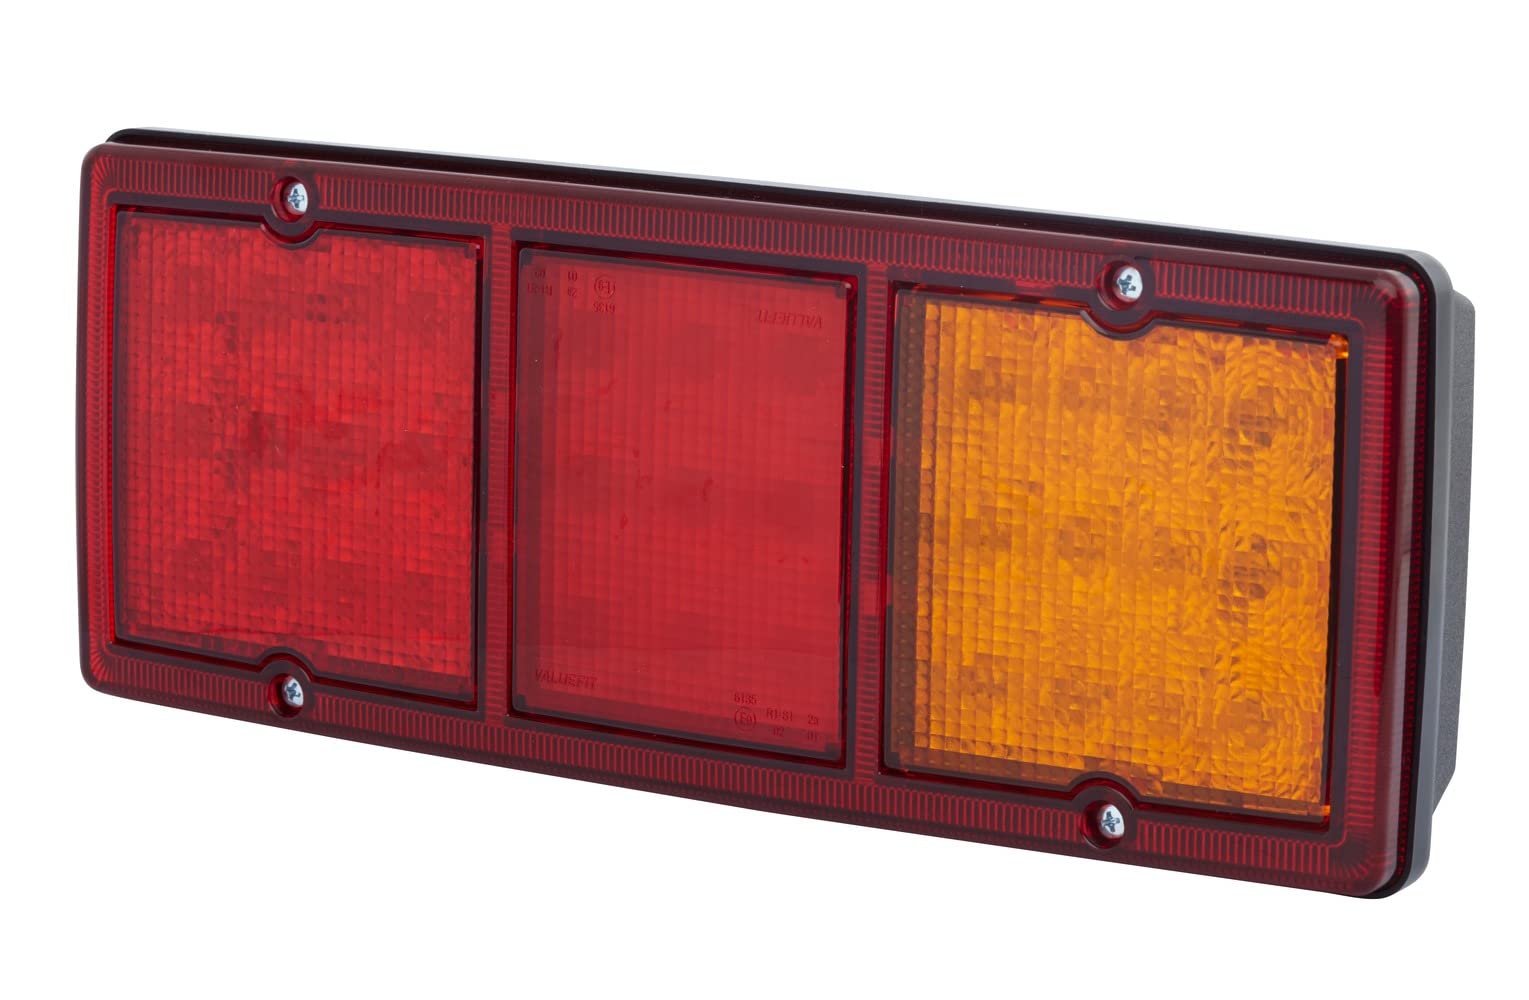 HELLA VALUEFIT Rückleuchte - LED - Anhänger Beleuchtung - 12V / 24V - Anbau/geschraubt - ECE - Lichtscheibenfarbe: rot/gelb - Stecker: Flachstecker - links/rechts - Menge: 1 - 2SD 357 024-001 von Hella